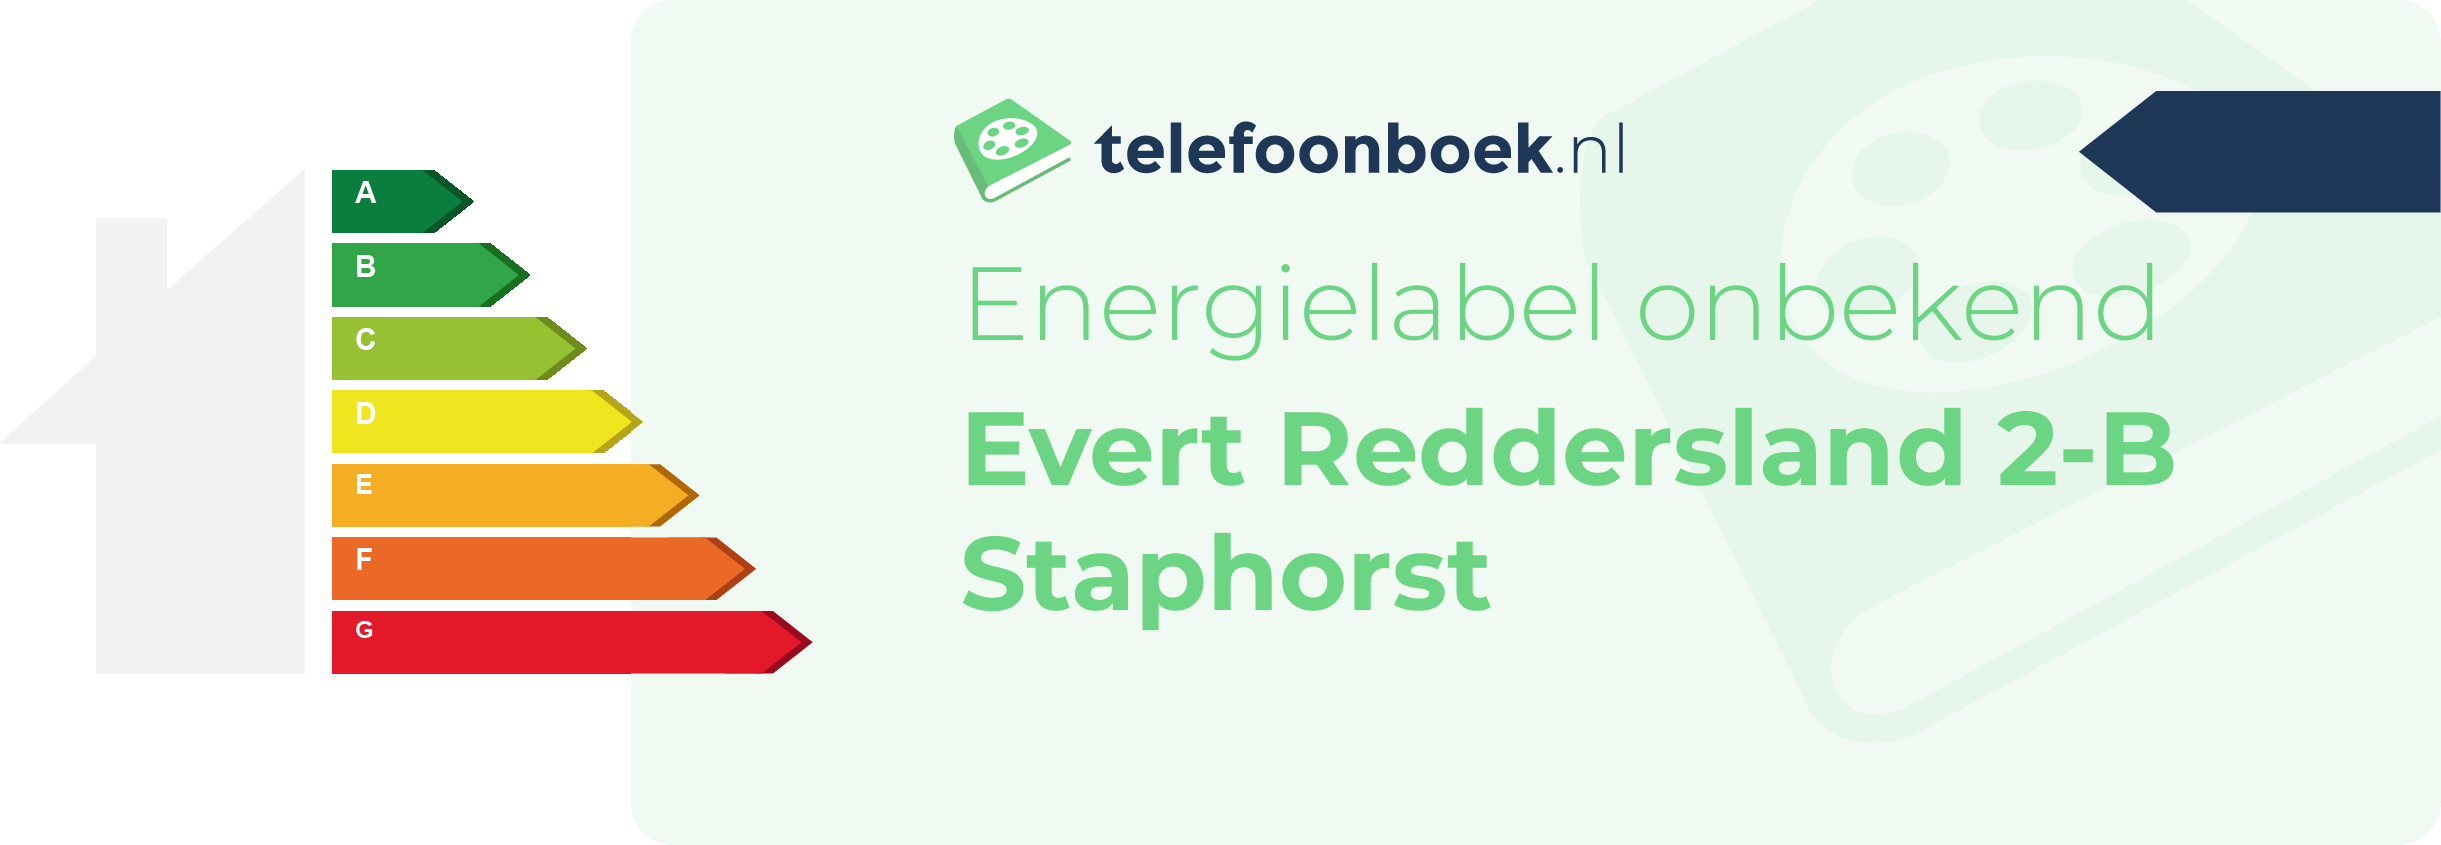 Energielabel Evert Reddersland 2-B Staphorst